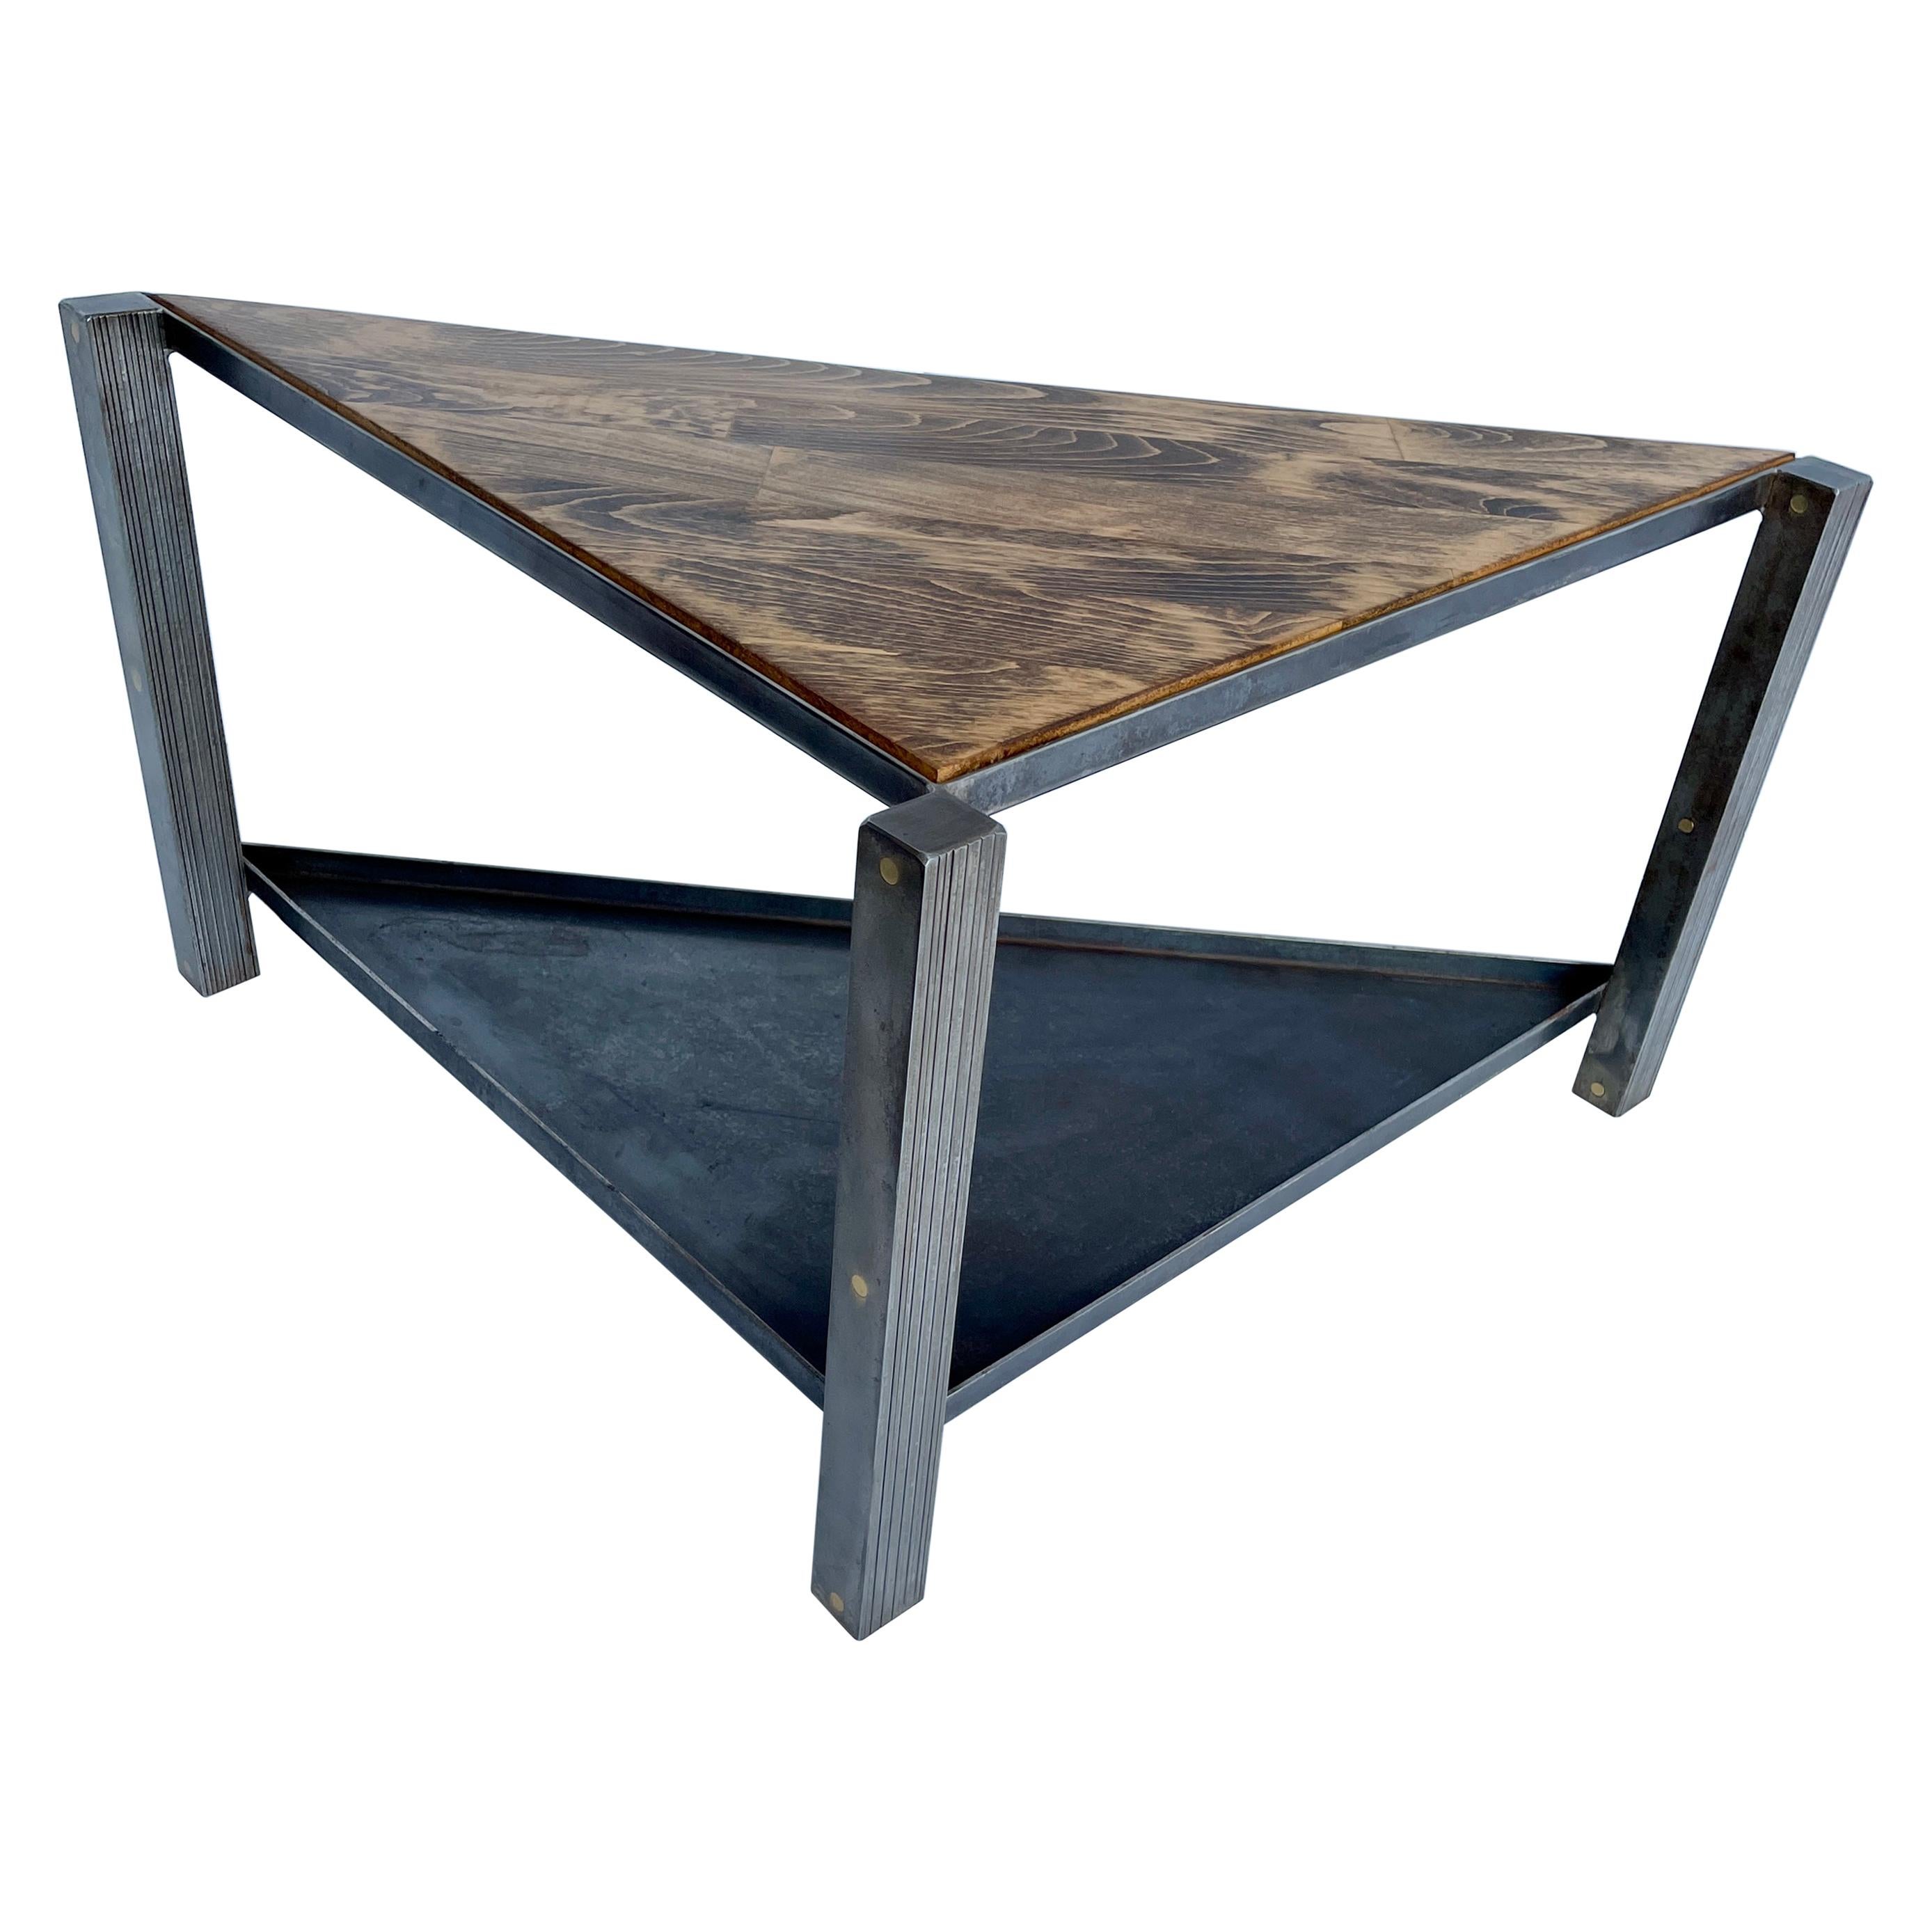 Table triangulaire industrielle en acier inoxydable avec plateau de table en chêne, moderne